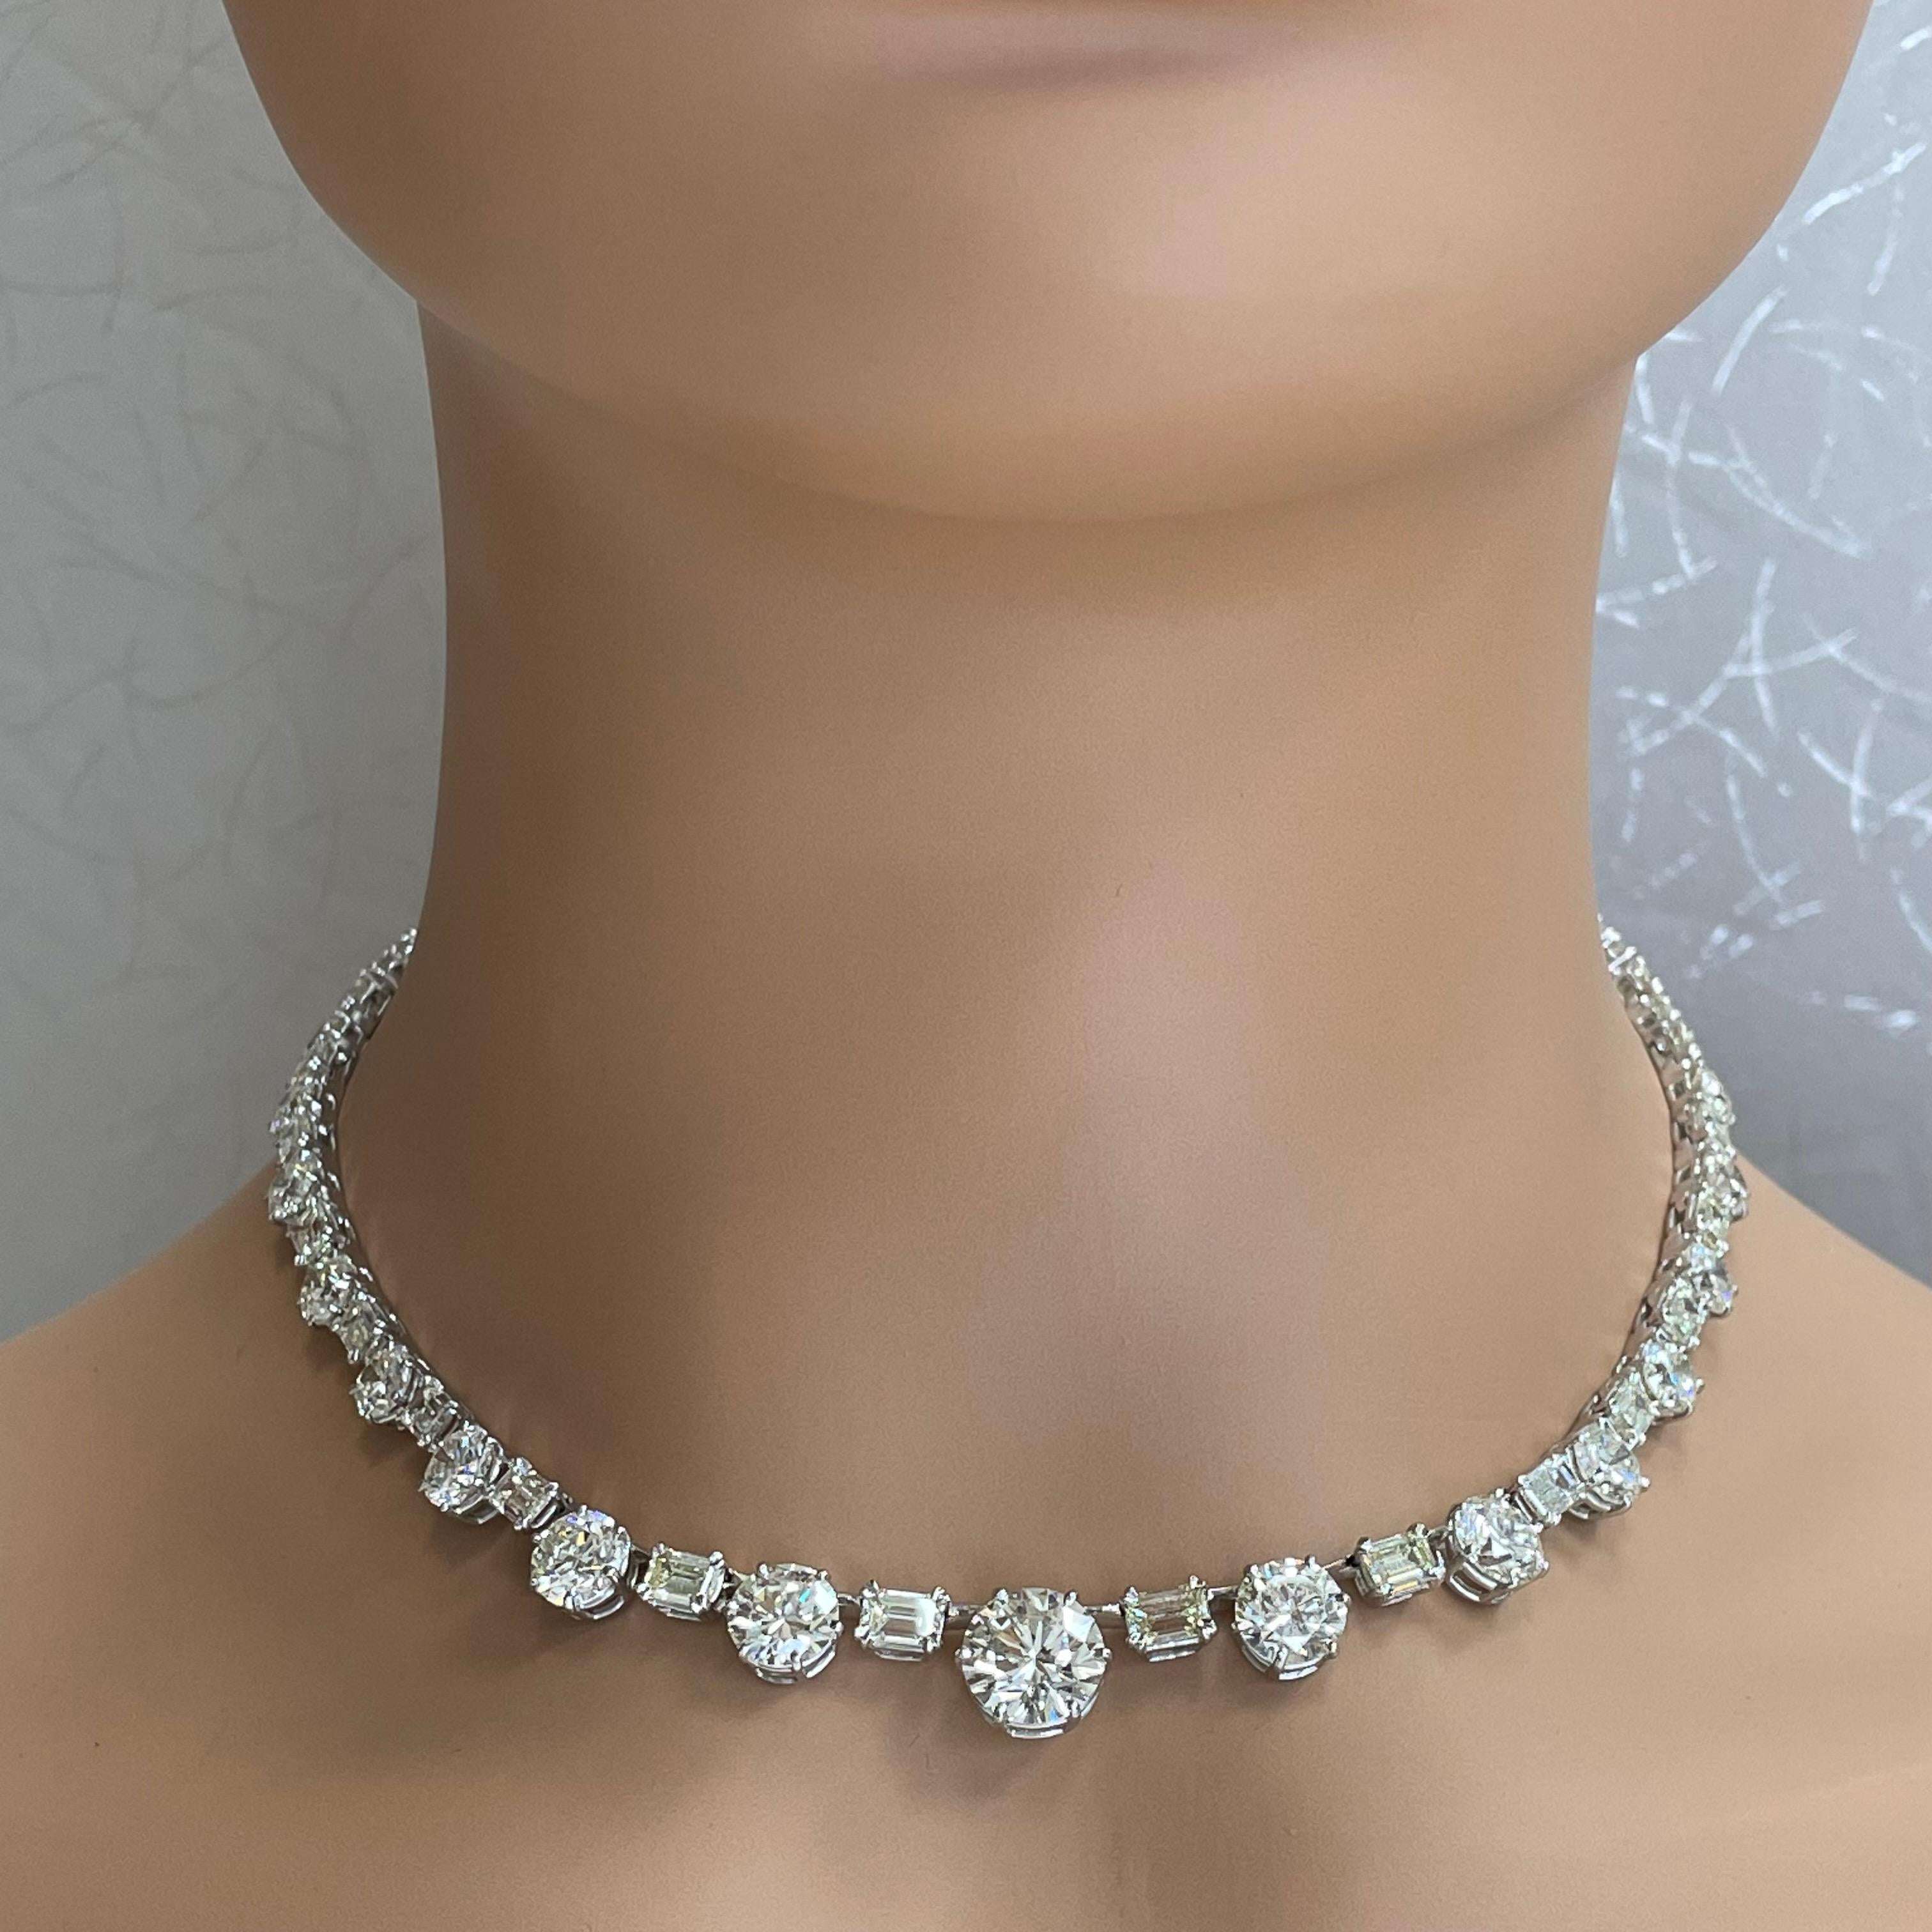 Un bijou pour des générations, ce magnifique collier de diamants est conçu pour vous couper le souffle. Avec un minimum d'or blanc mettant en valeur de fins diamants solitaires dont le plus gros est un diamant rond de 4 ct, c'est un bijou à